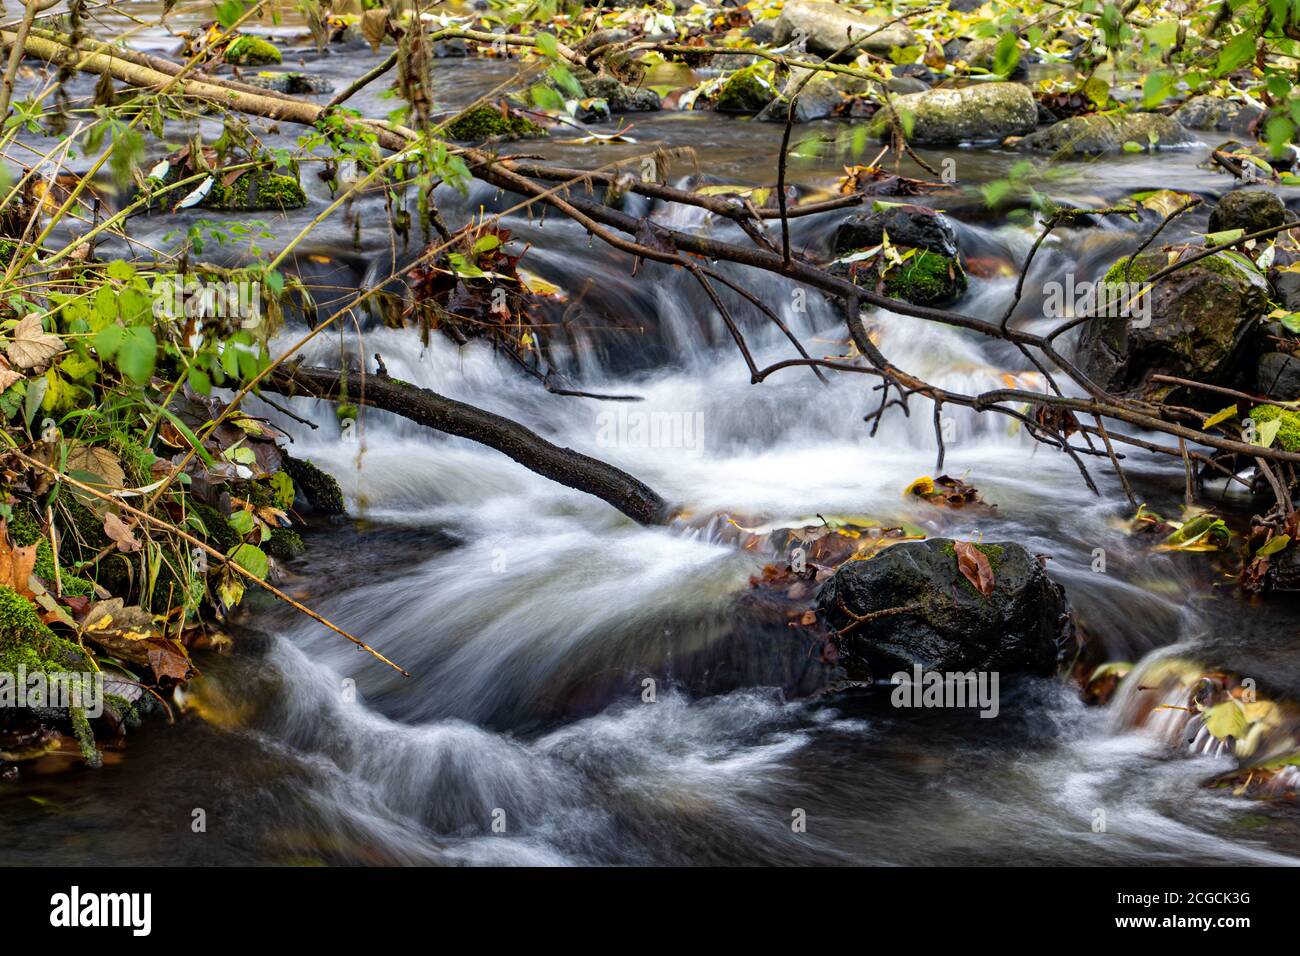 Una cascada de agua en el arroyo de otoño con hojas caídas. Ramas caídas con hojas de color en un río. Foto de stock